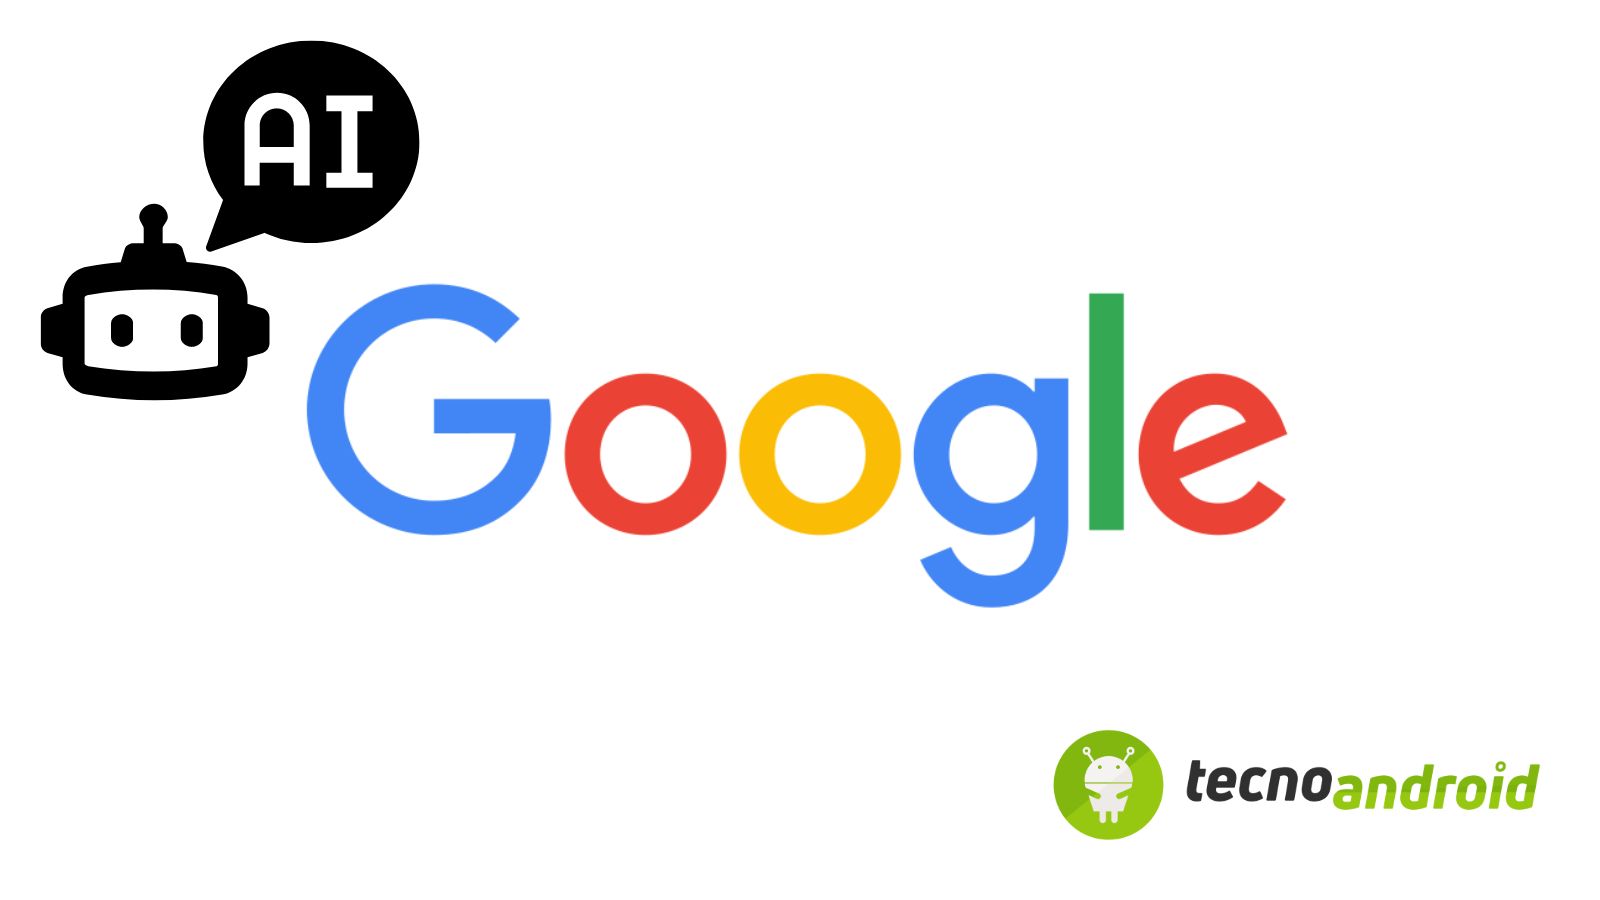 Google mostra la sua visione futuristica per Internet 